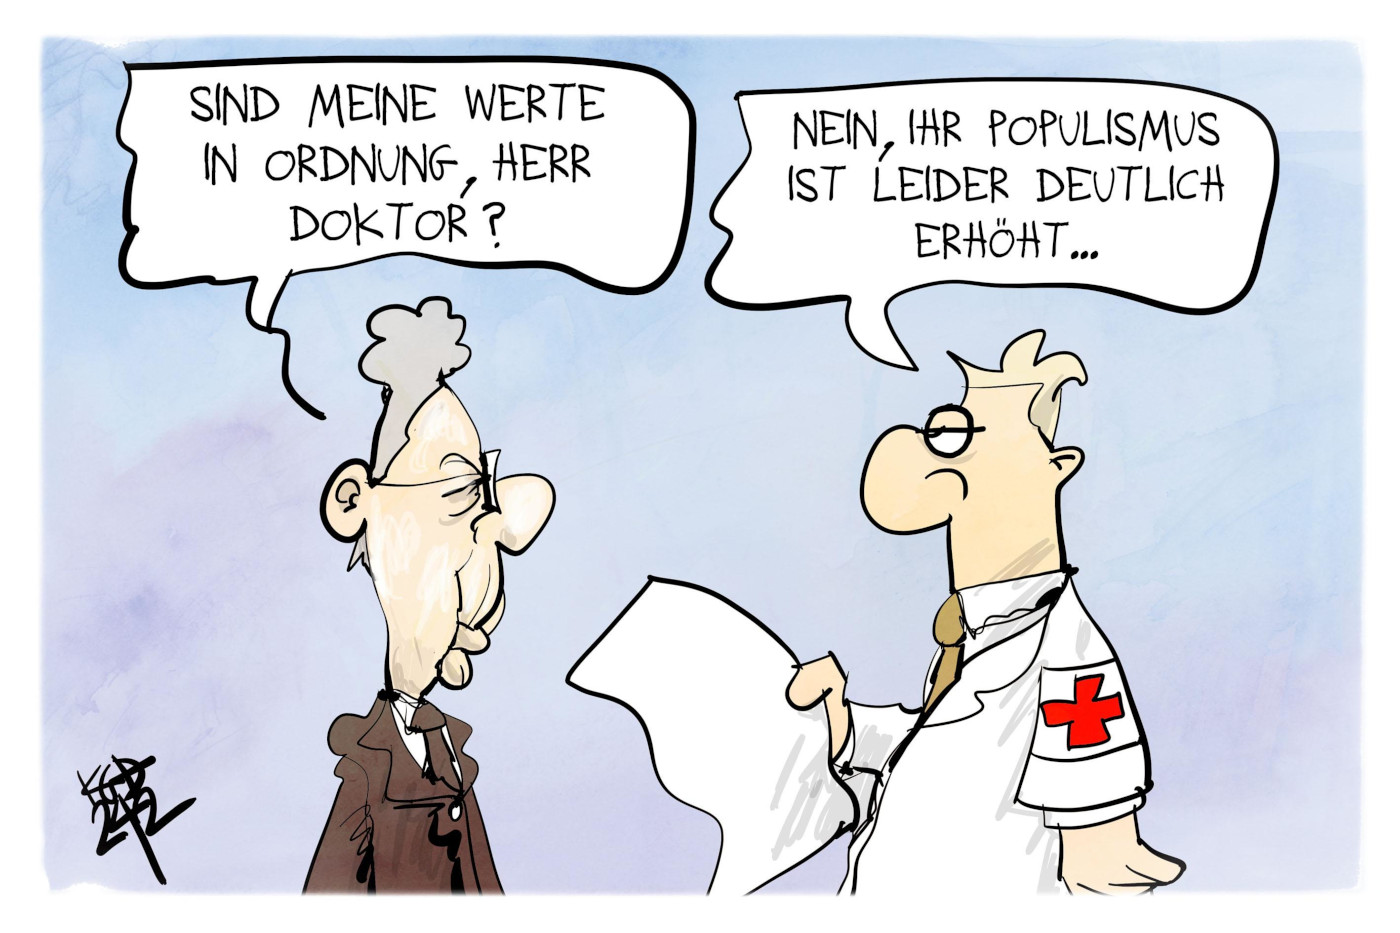 Die Karikatur "Werteunion" von Kostas Koufogiorgos. Links ist Hans-Georg Maaßen zu sehen, der fragt: "Sind meine Werte in Ordnung, Herr Doktor?" Der Doktor, rechts stehend, antwortet: "Nein, ihr Populismus ist leider deutlich erhöht ..."